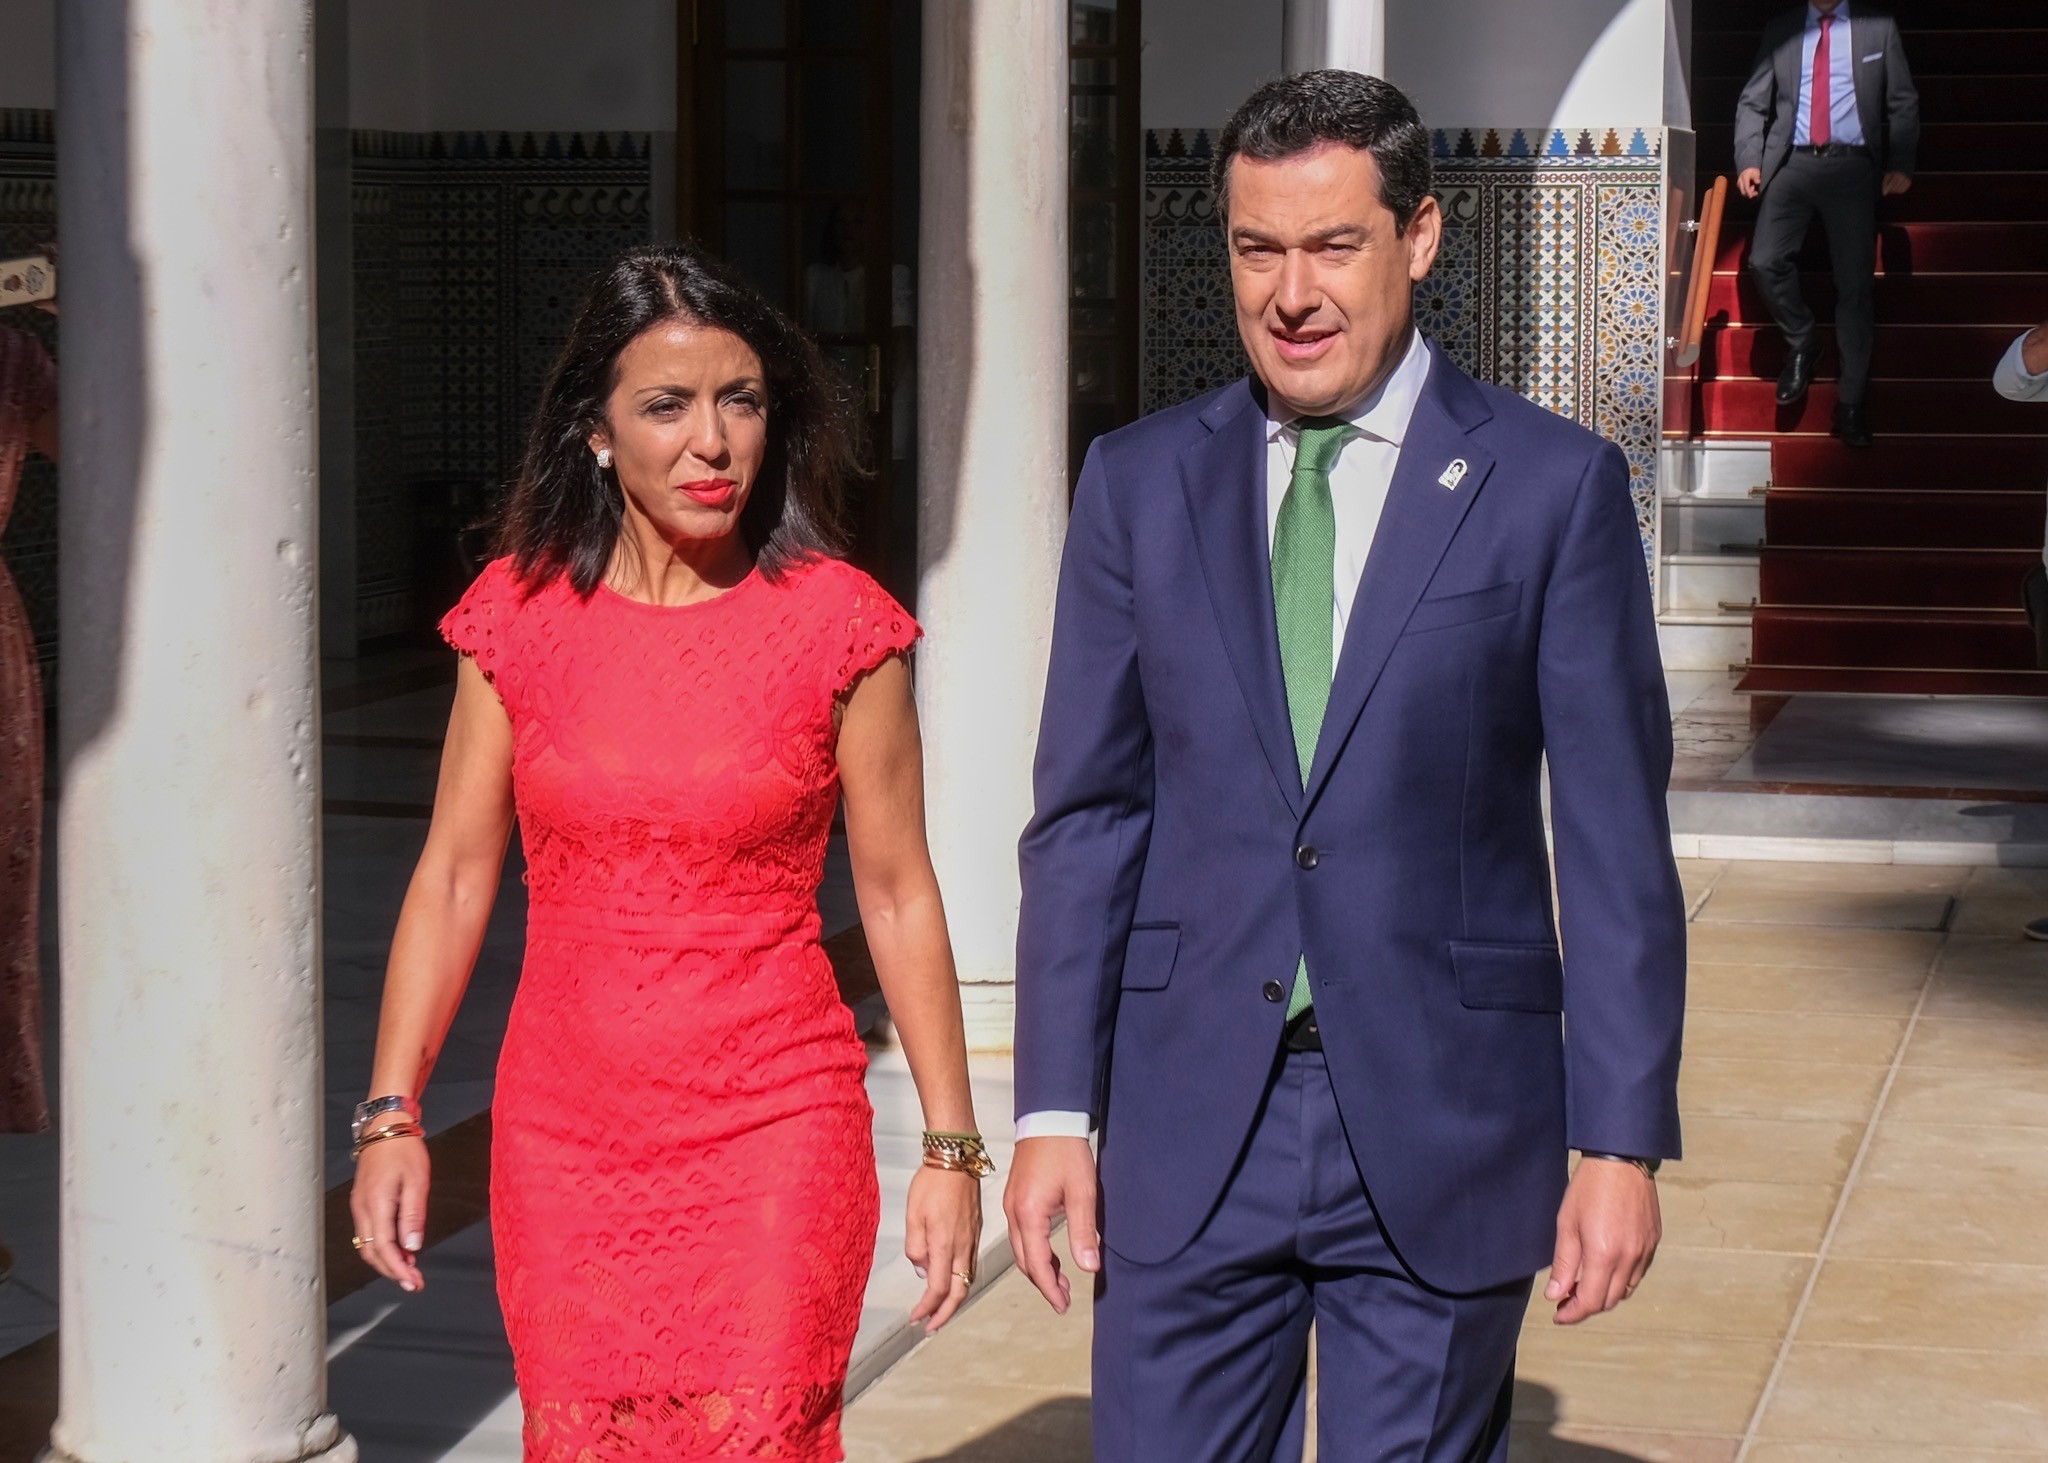  La presidenta del Parlamento y el presidente de la Junta de Andaluca, antes del inicio del acto